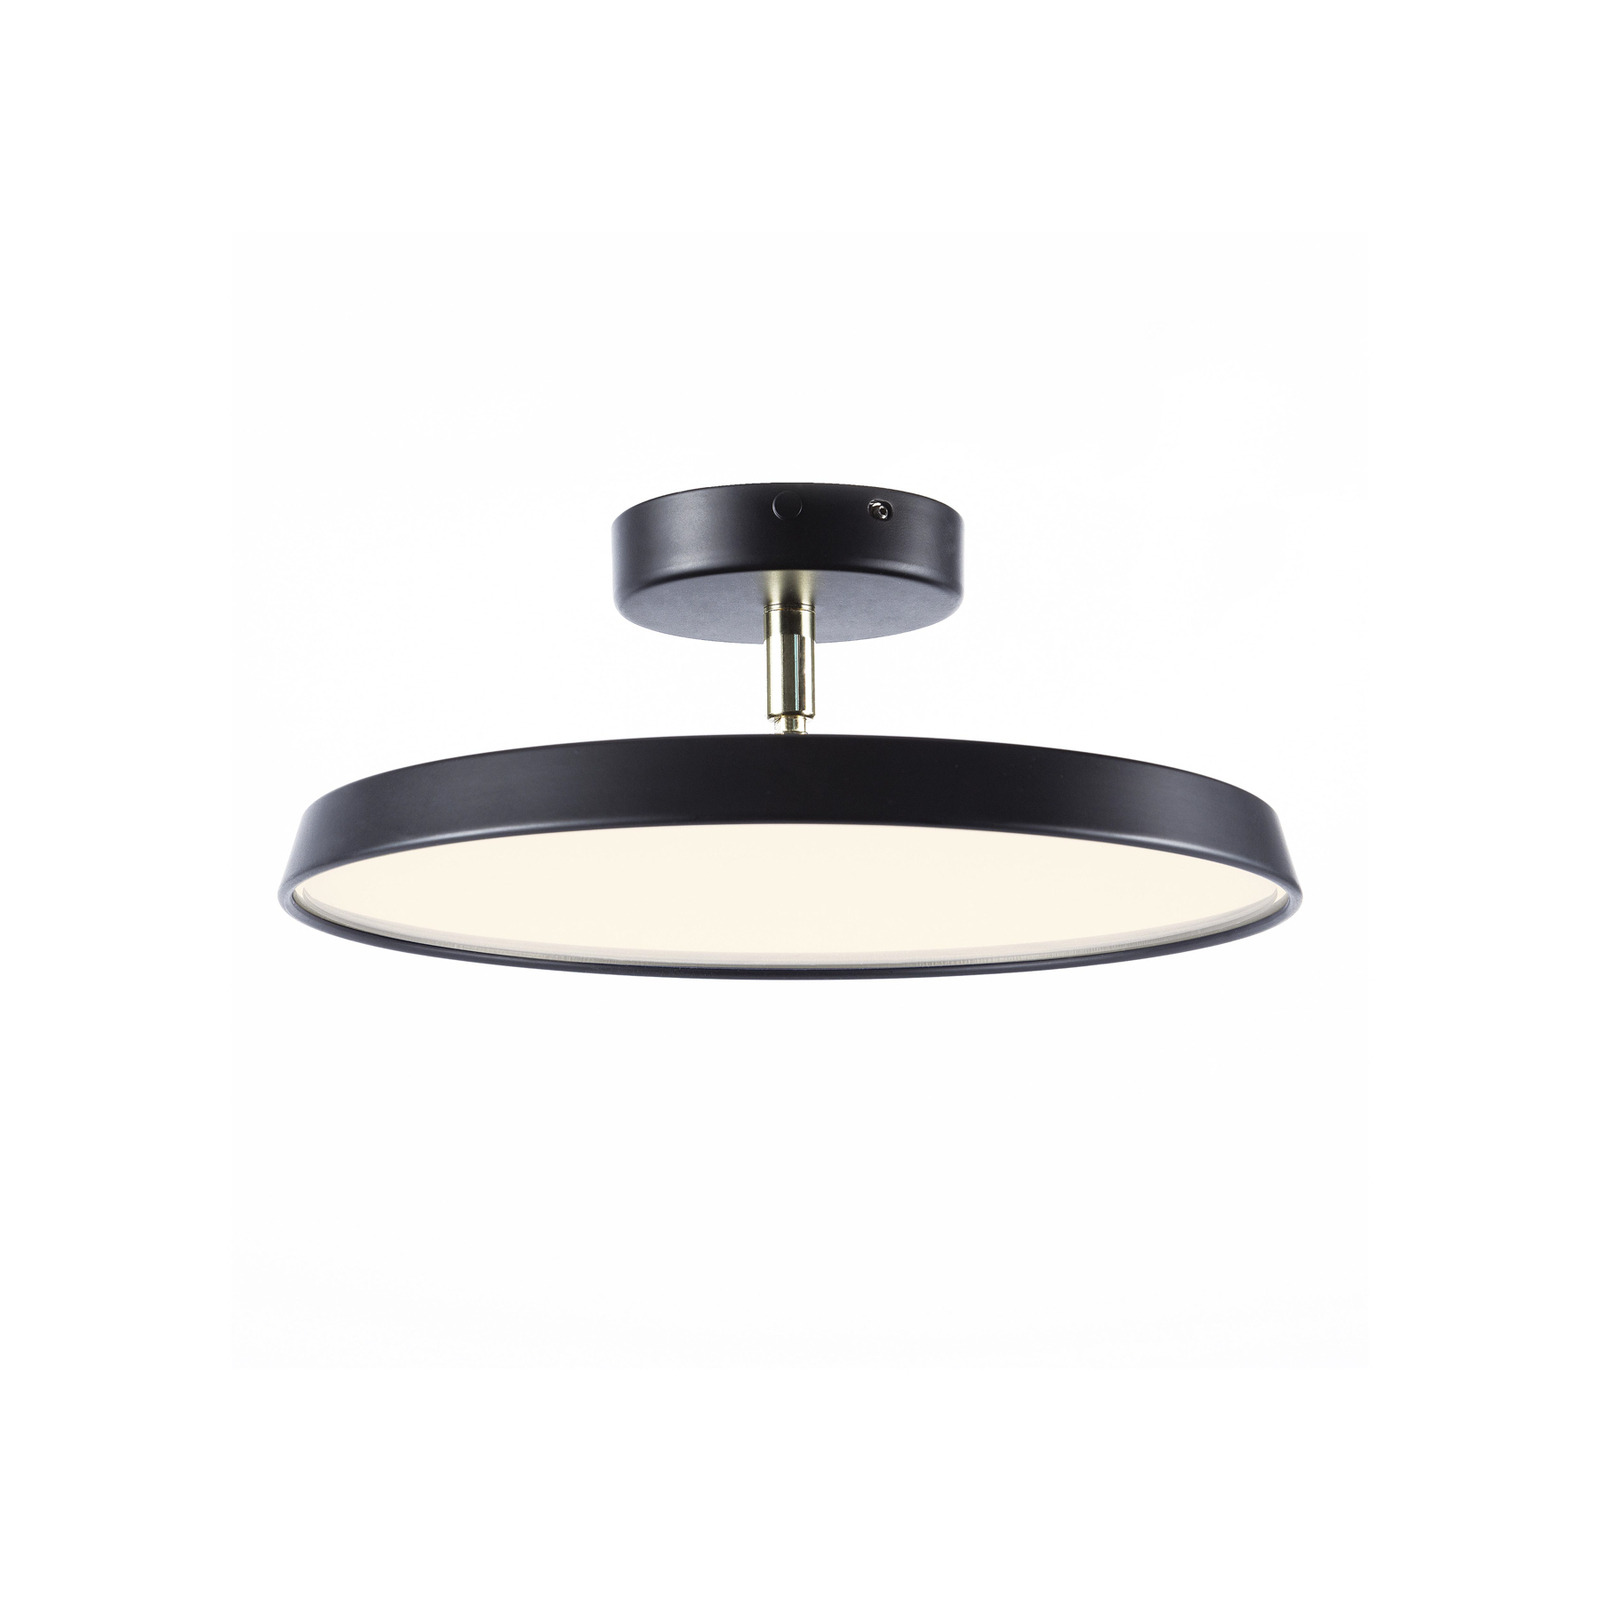 LED semi-flush ceiling light Kaito 2 Pro, Ø 30 cm, black, spacing